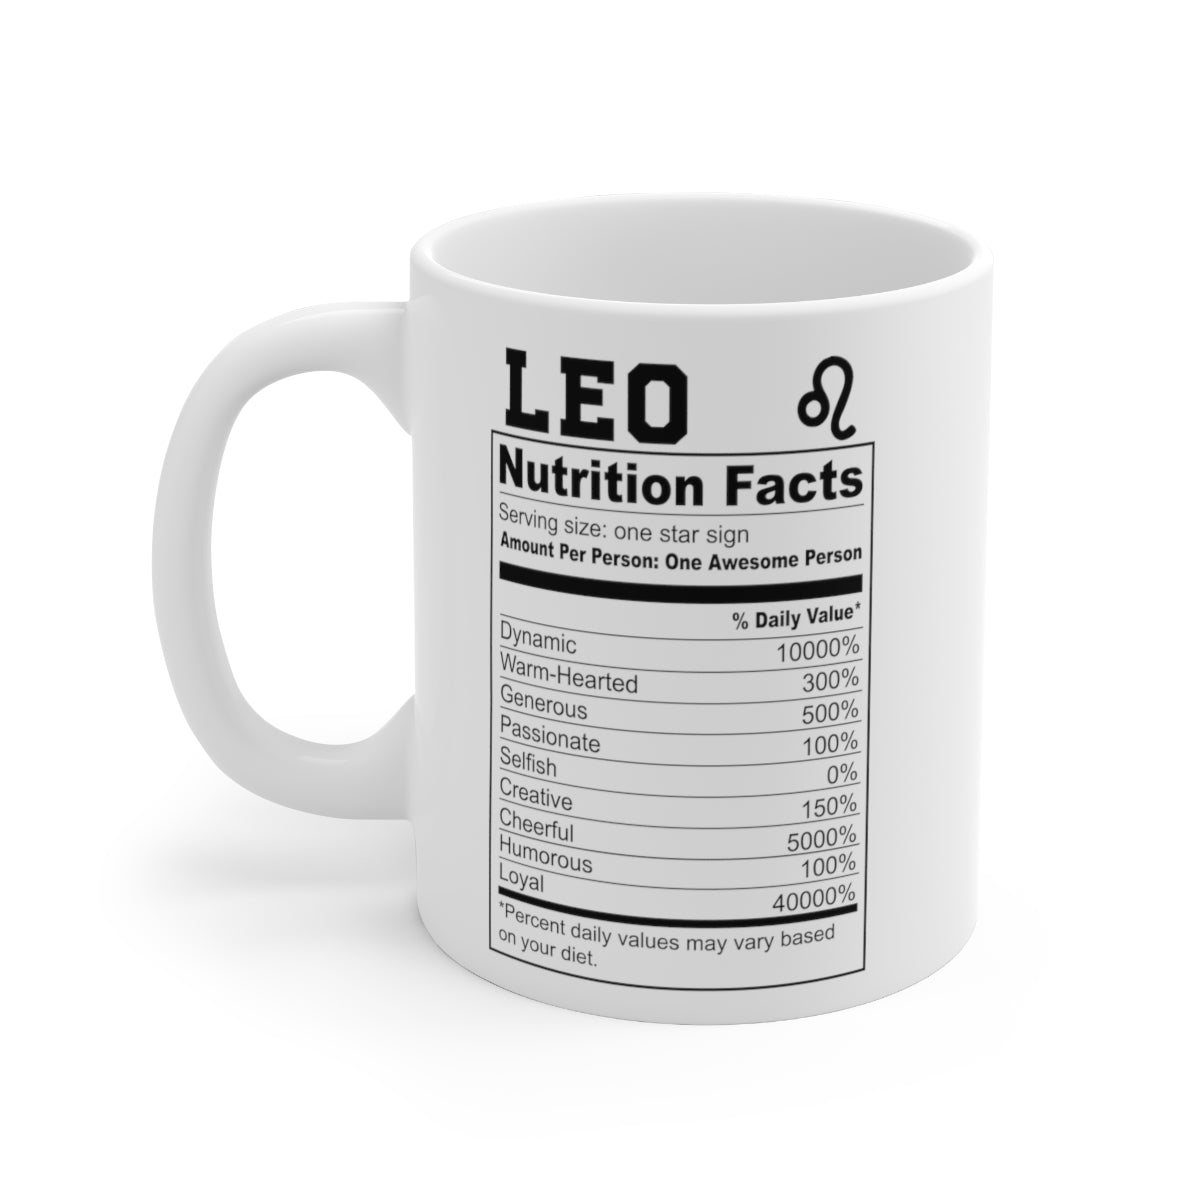 Leo Gift| Coffee Mugs For Fall Season| Zodiac Coffee Mugs| Zodiac Mugs| Fashion Mugs| Meme Mugs| Mastered It Mugs| Numbered Mugs| Mugs CPA